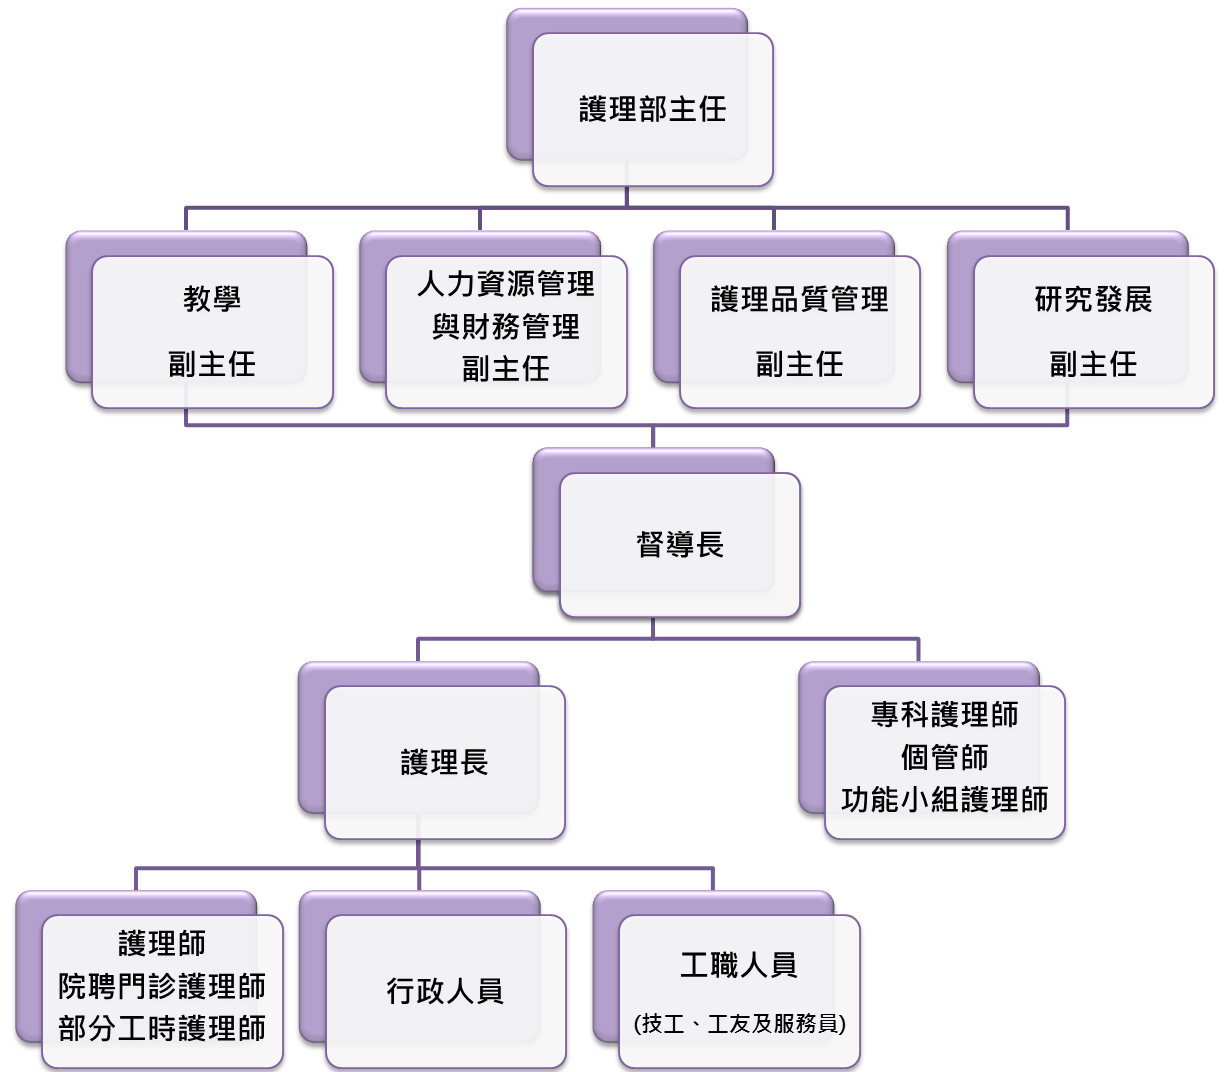 護理部行政組織及功能架構圖